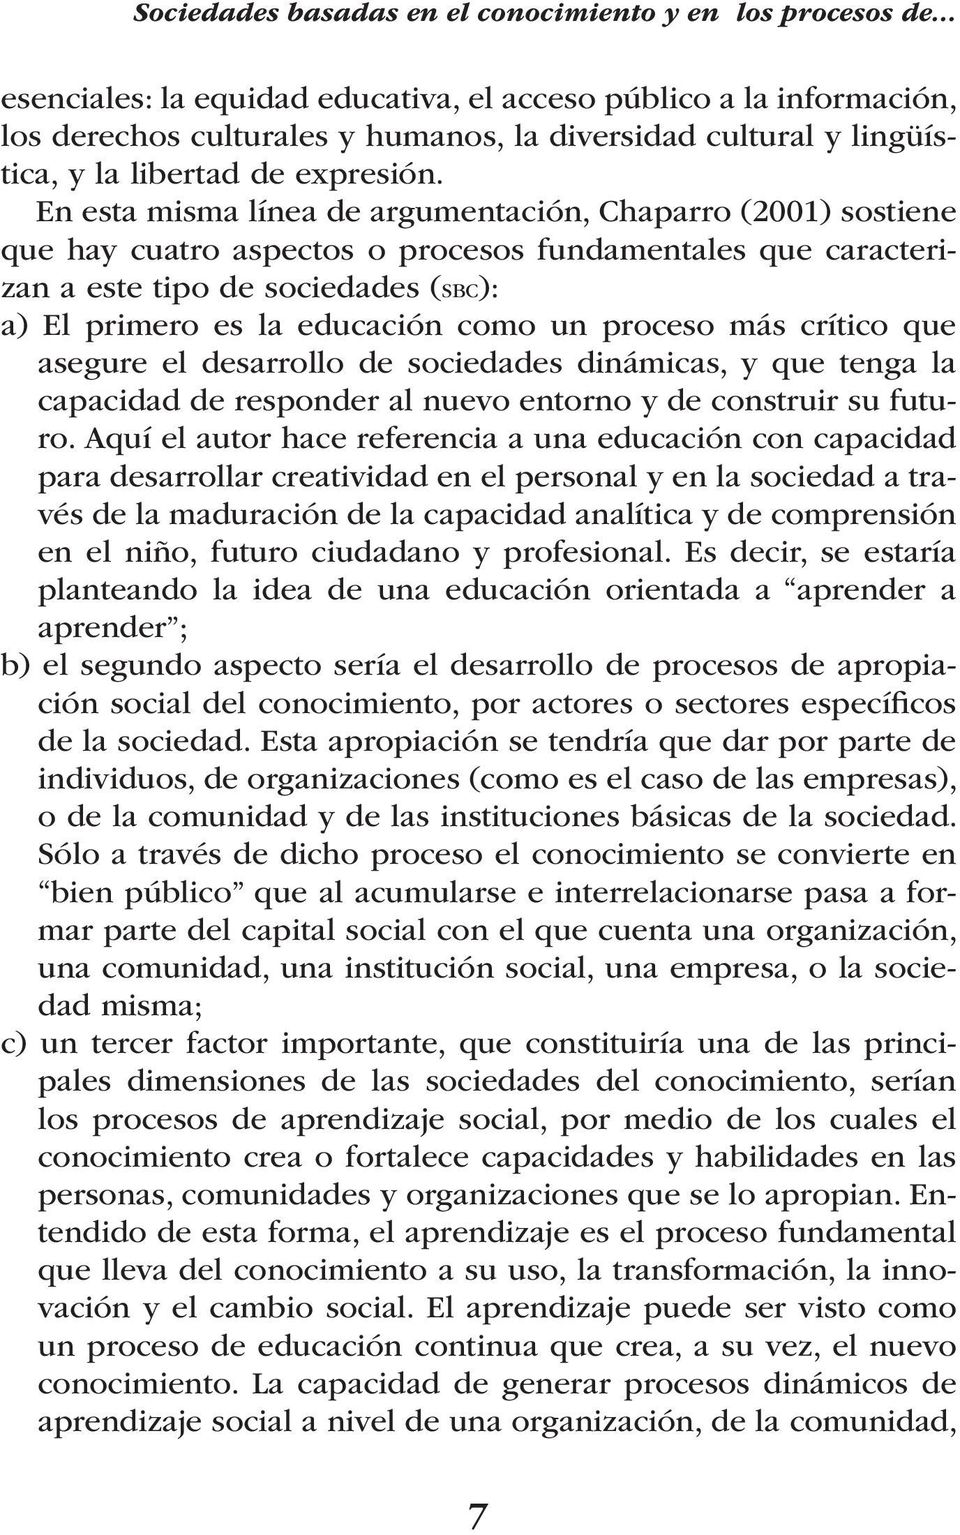 En esta misma línea de argumentación, Chaparro (2001) sostiene que hay cuatro aspectos o procesos fundamentales que caracterizan a este tipo de sociedades (sbc): a) El primero es la educación como un